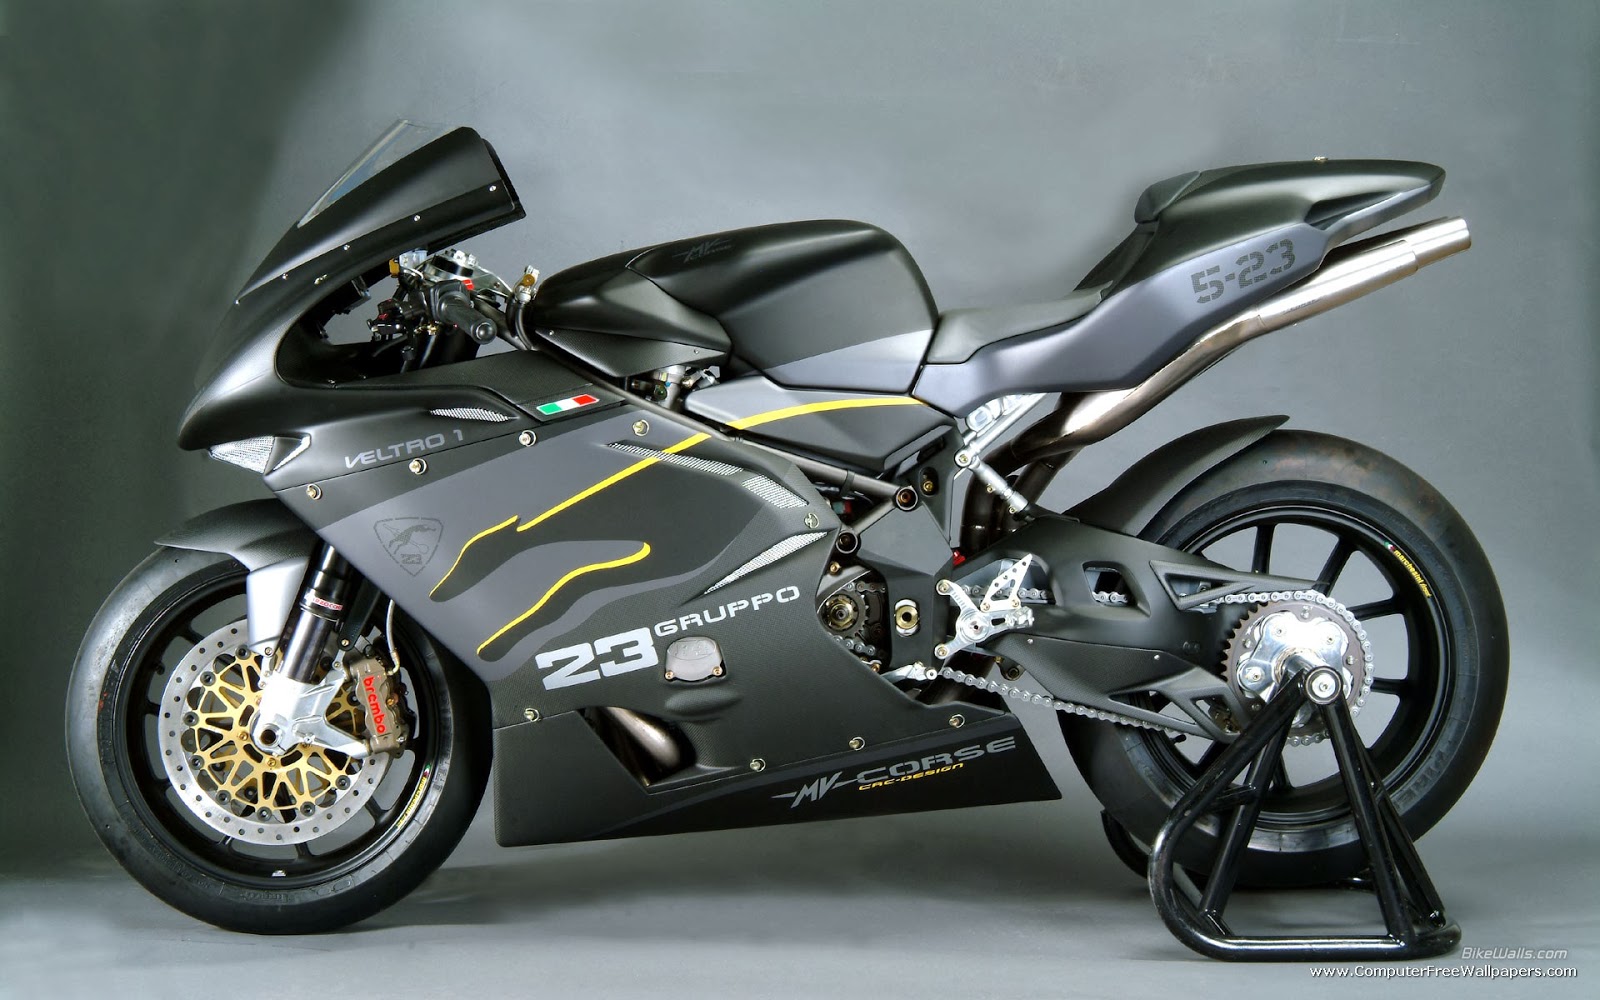 Koleksi Gambar Sepeda Motor Ninja Termahal Terbaru Codot Modifikasi